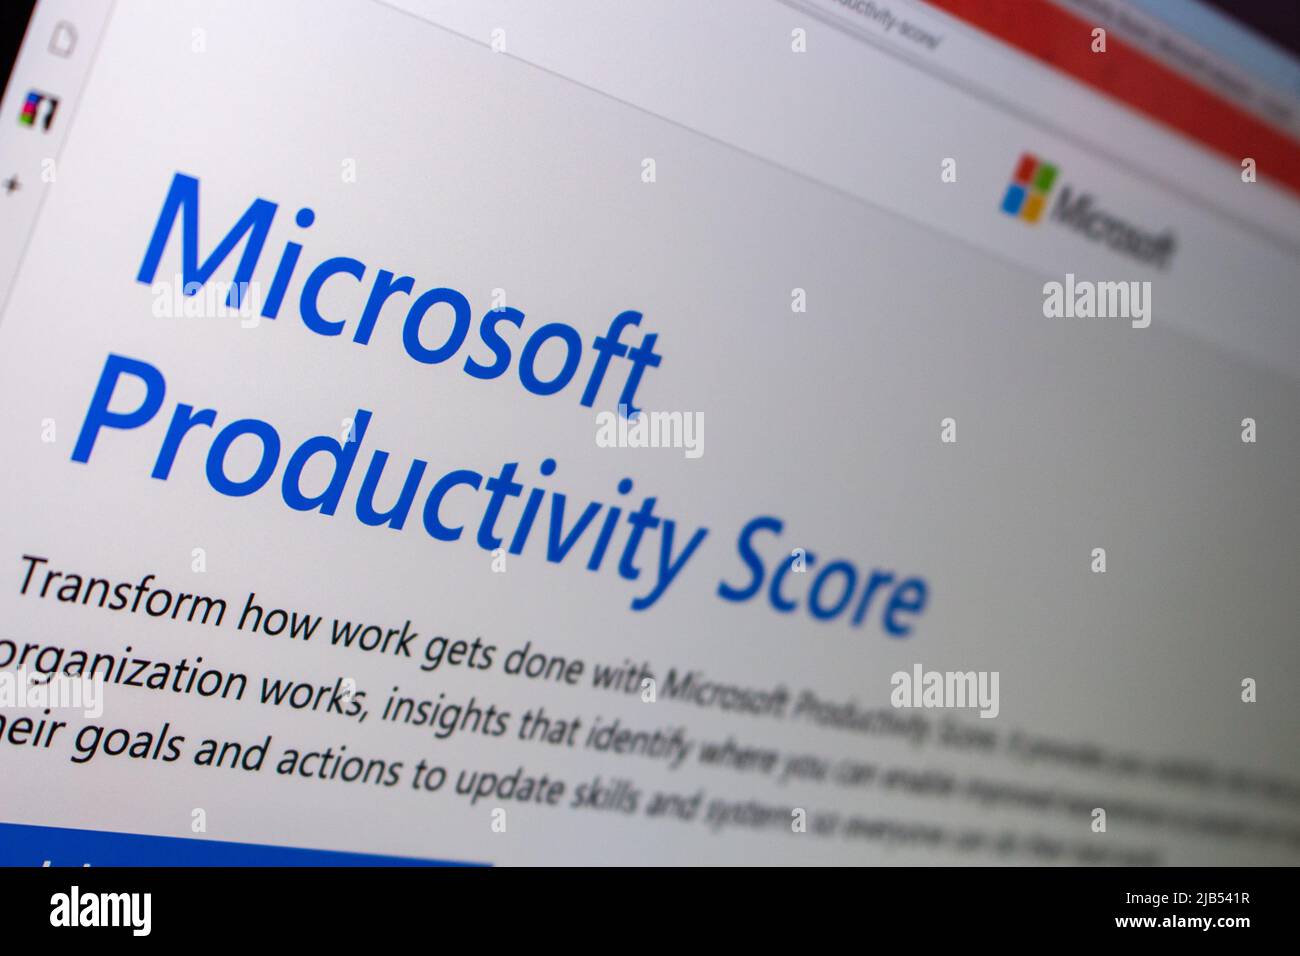 Kumamoto, JAPÓN - diciembre de 4 2020 : El primer plano del logotipo de Microsoft y el sitio web de Microsoft Productivity Score en un ordenador portátil Foto de stock